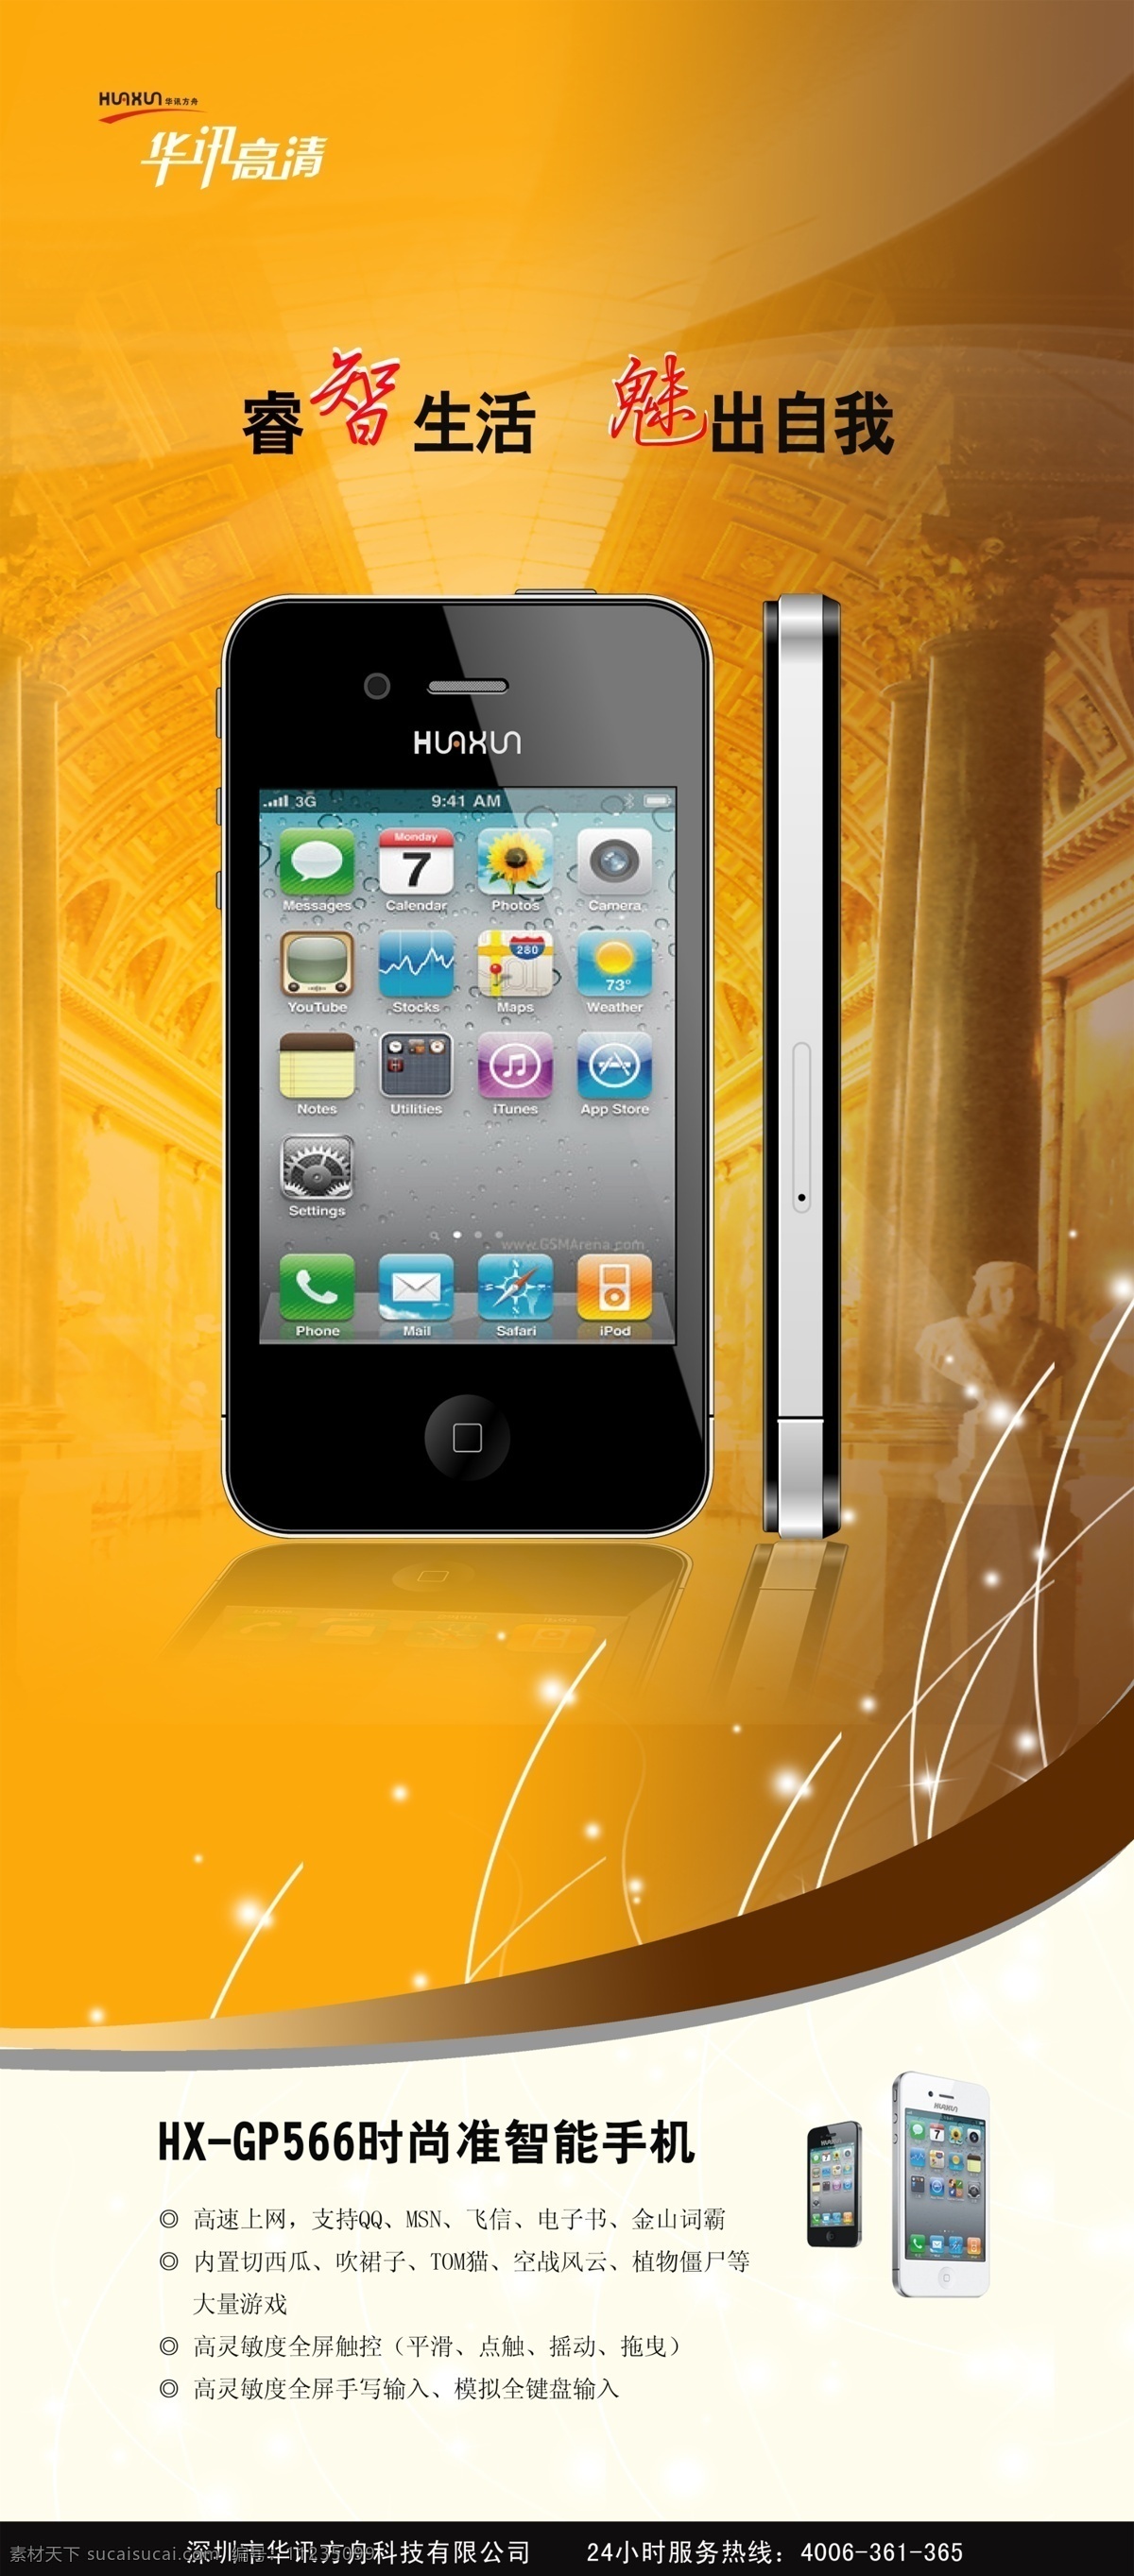 iphone4 分层 高贵 高清 宫殿 广告设计模板 金黄 苹果 手机展架 手机 展架 时尚 准智能 华讯 触控 高速上网 睿智 展板模板 源文件 其他展板设计